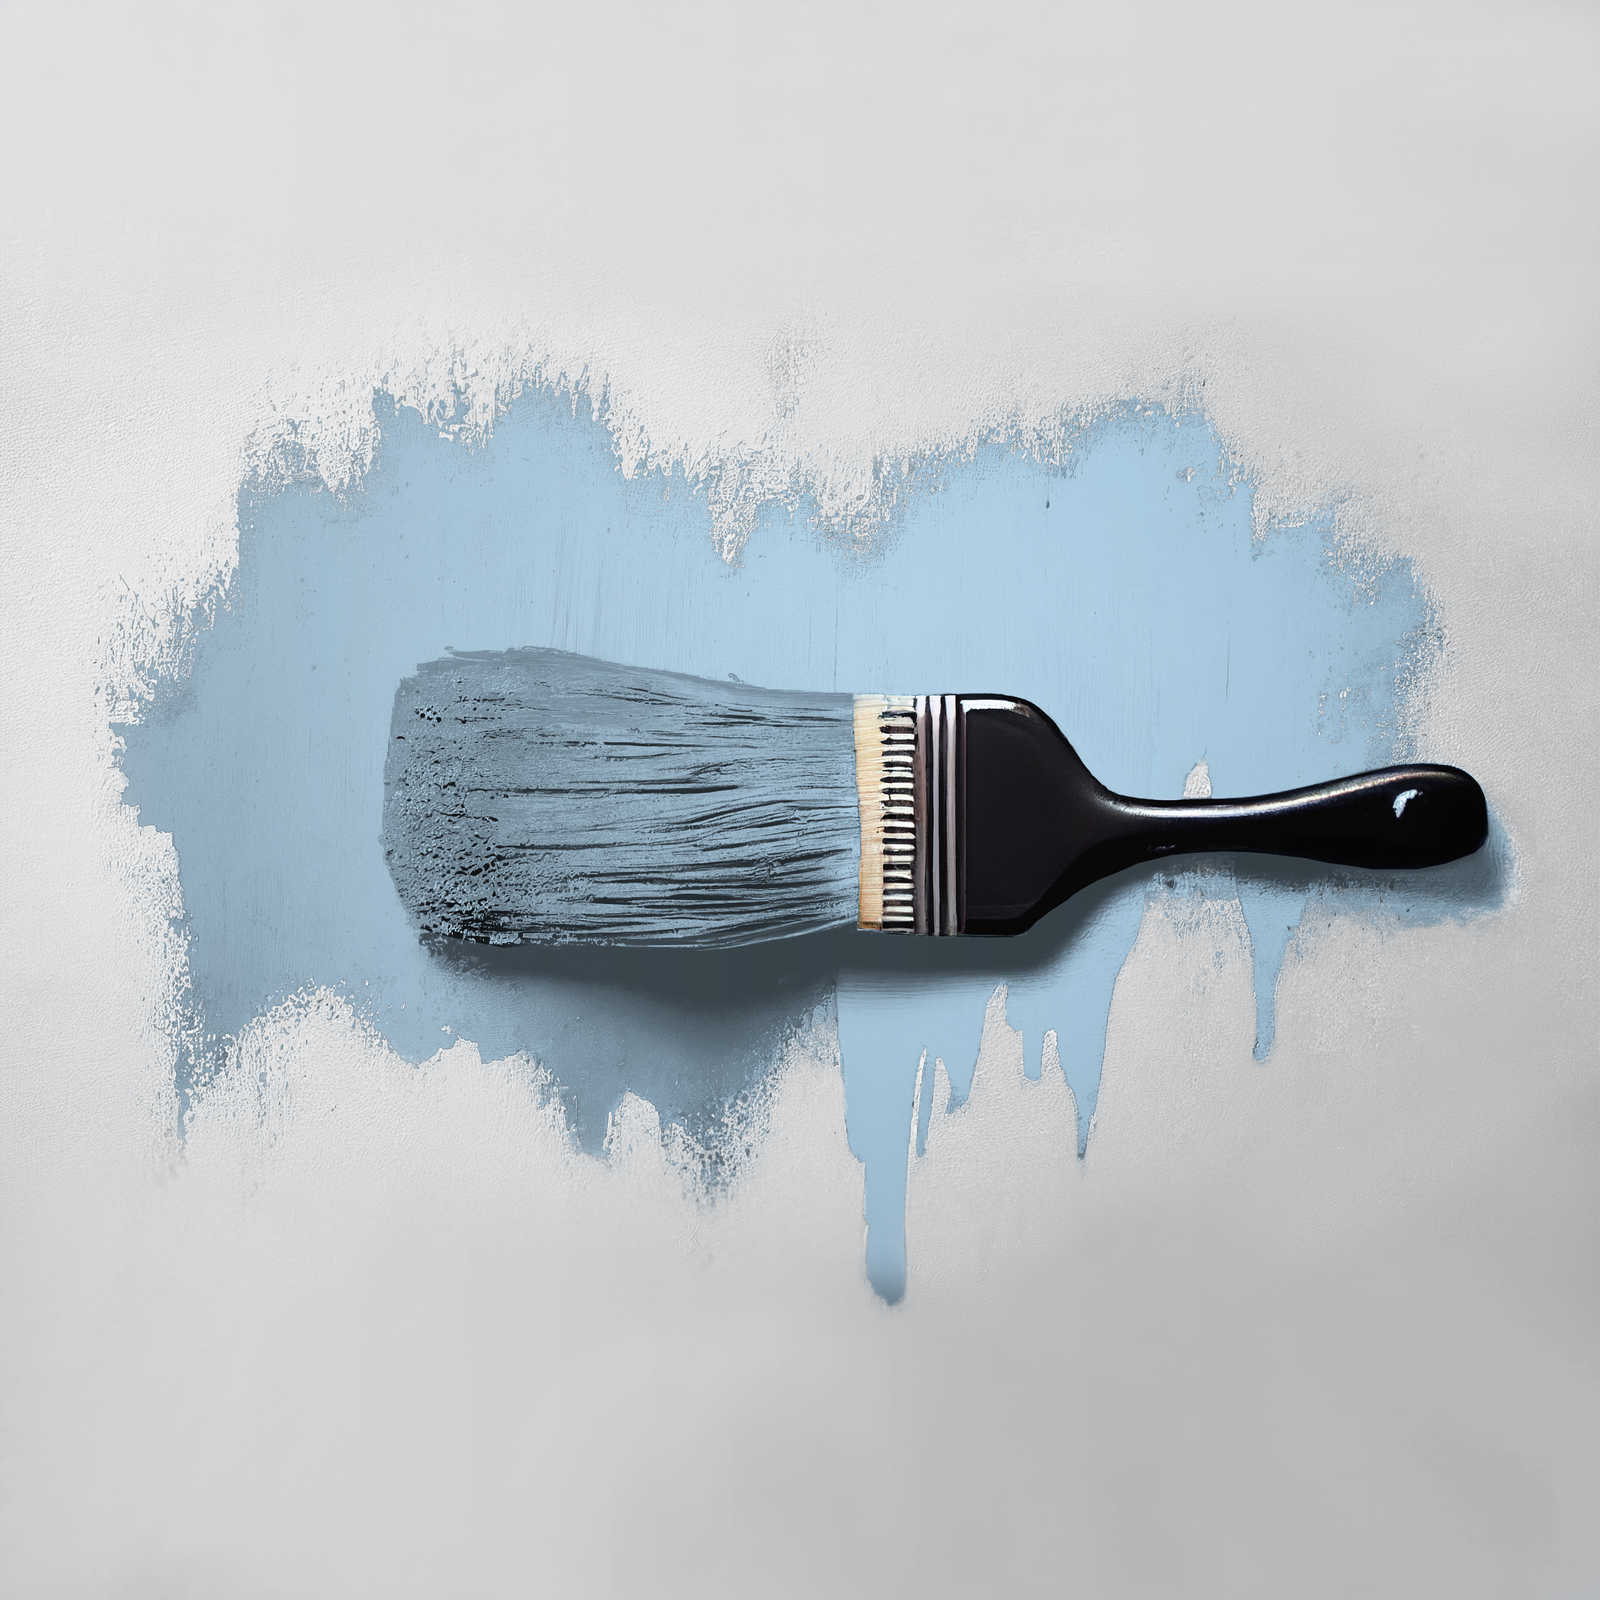             Pittura murale TCK3003 »Soft Sky« in blu cielo amichevole – 5,0 litri
        